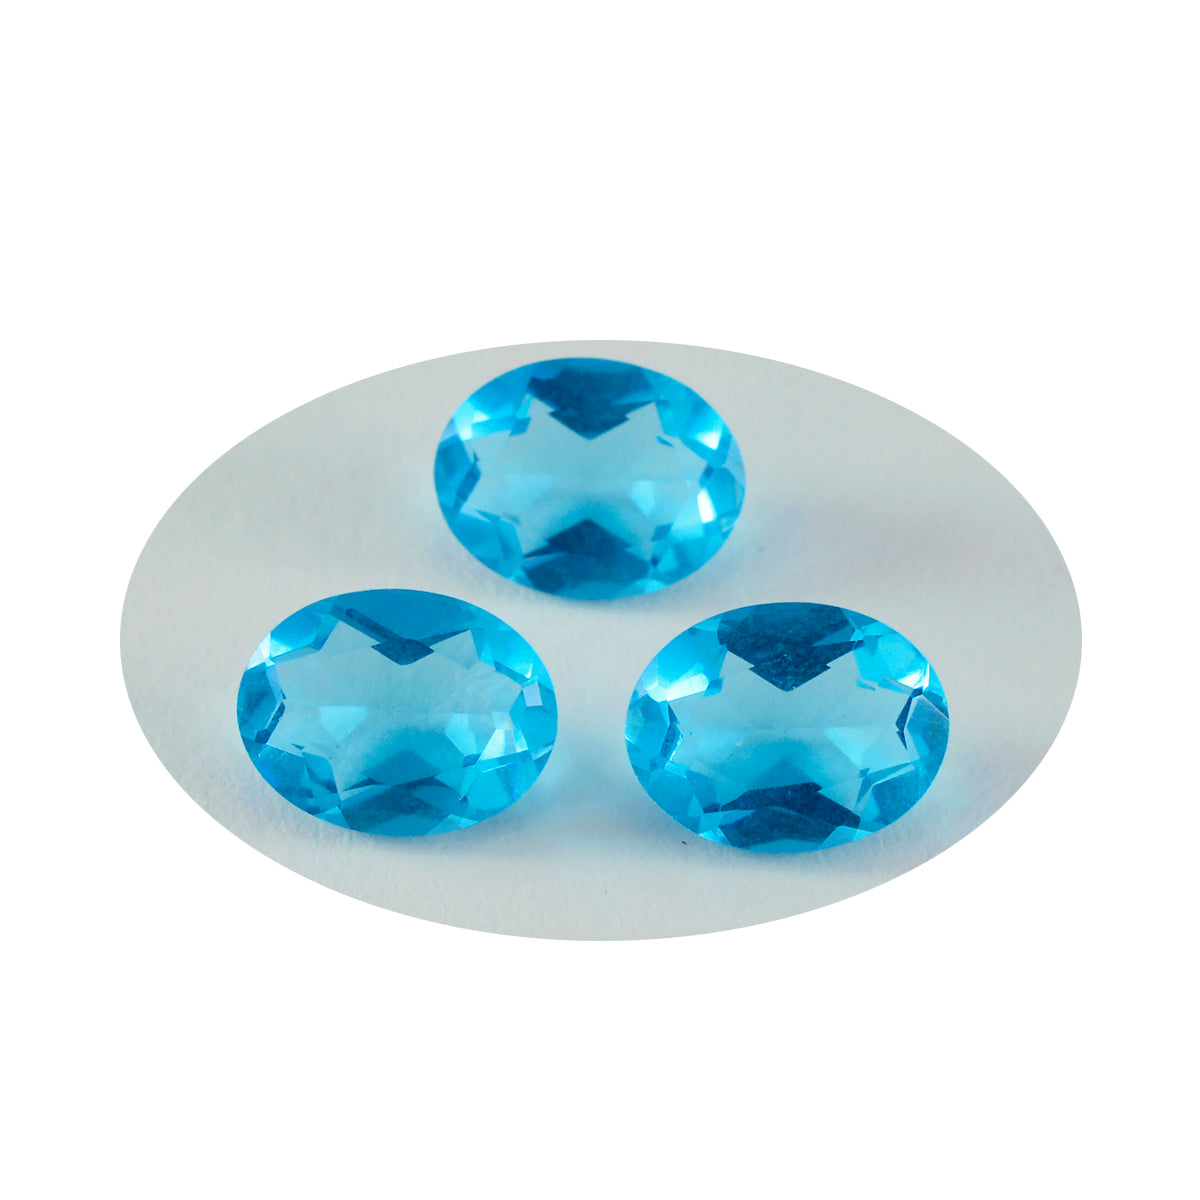 riyogems 1шт синий топаз cz ограненный 10x12 мм овальной формы красивый качественный свободный камень